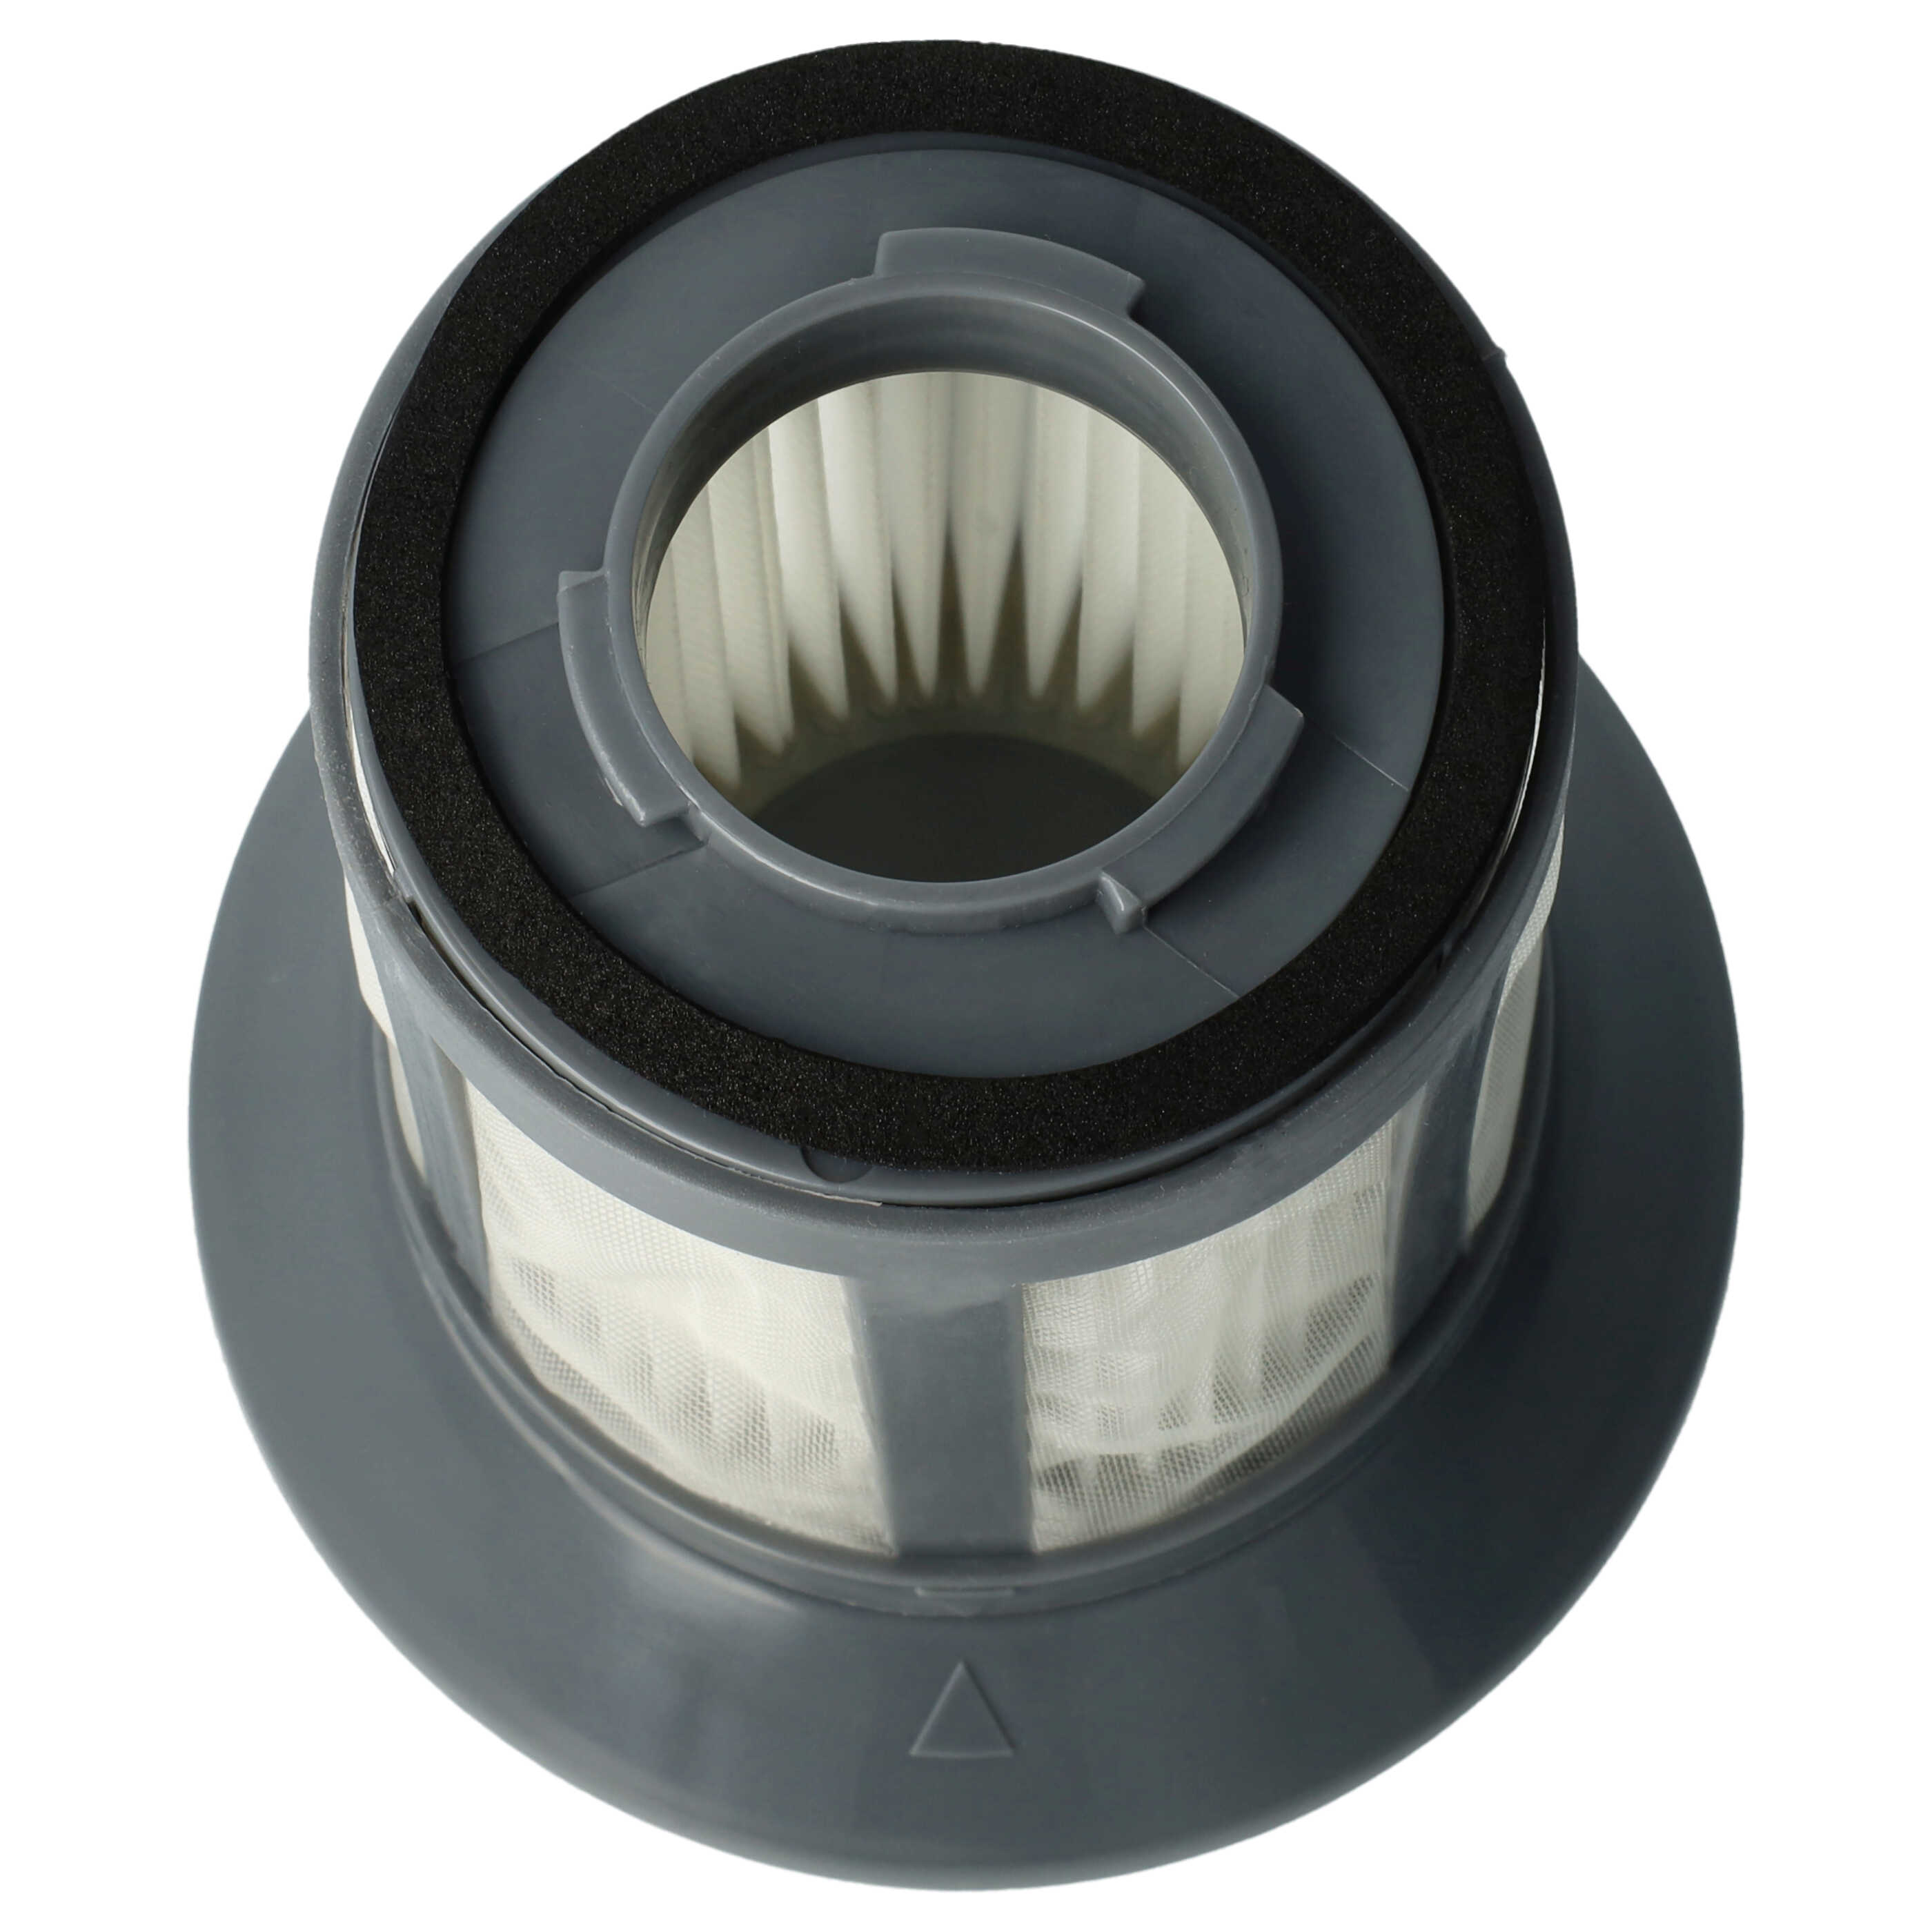 Filtr do odkurzacza BS 9012 CB Eco Cyclon Bomann - wkład filtracyjny (filtr nylonowy + HEPA)